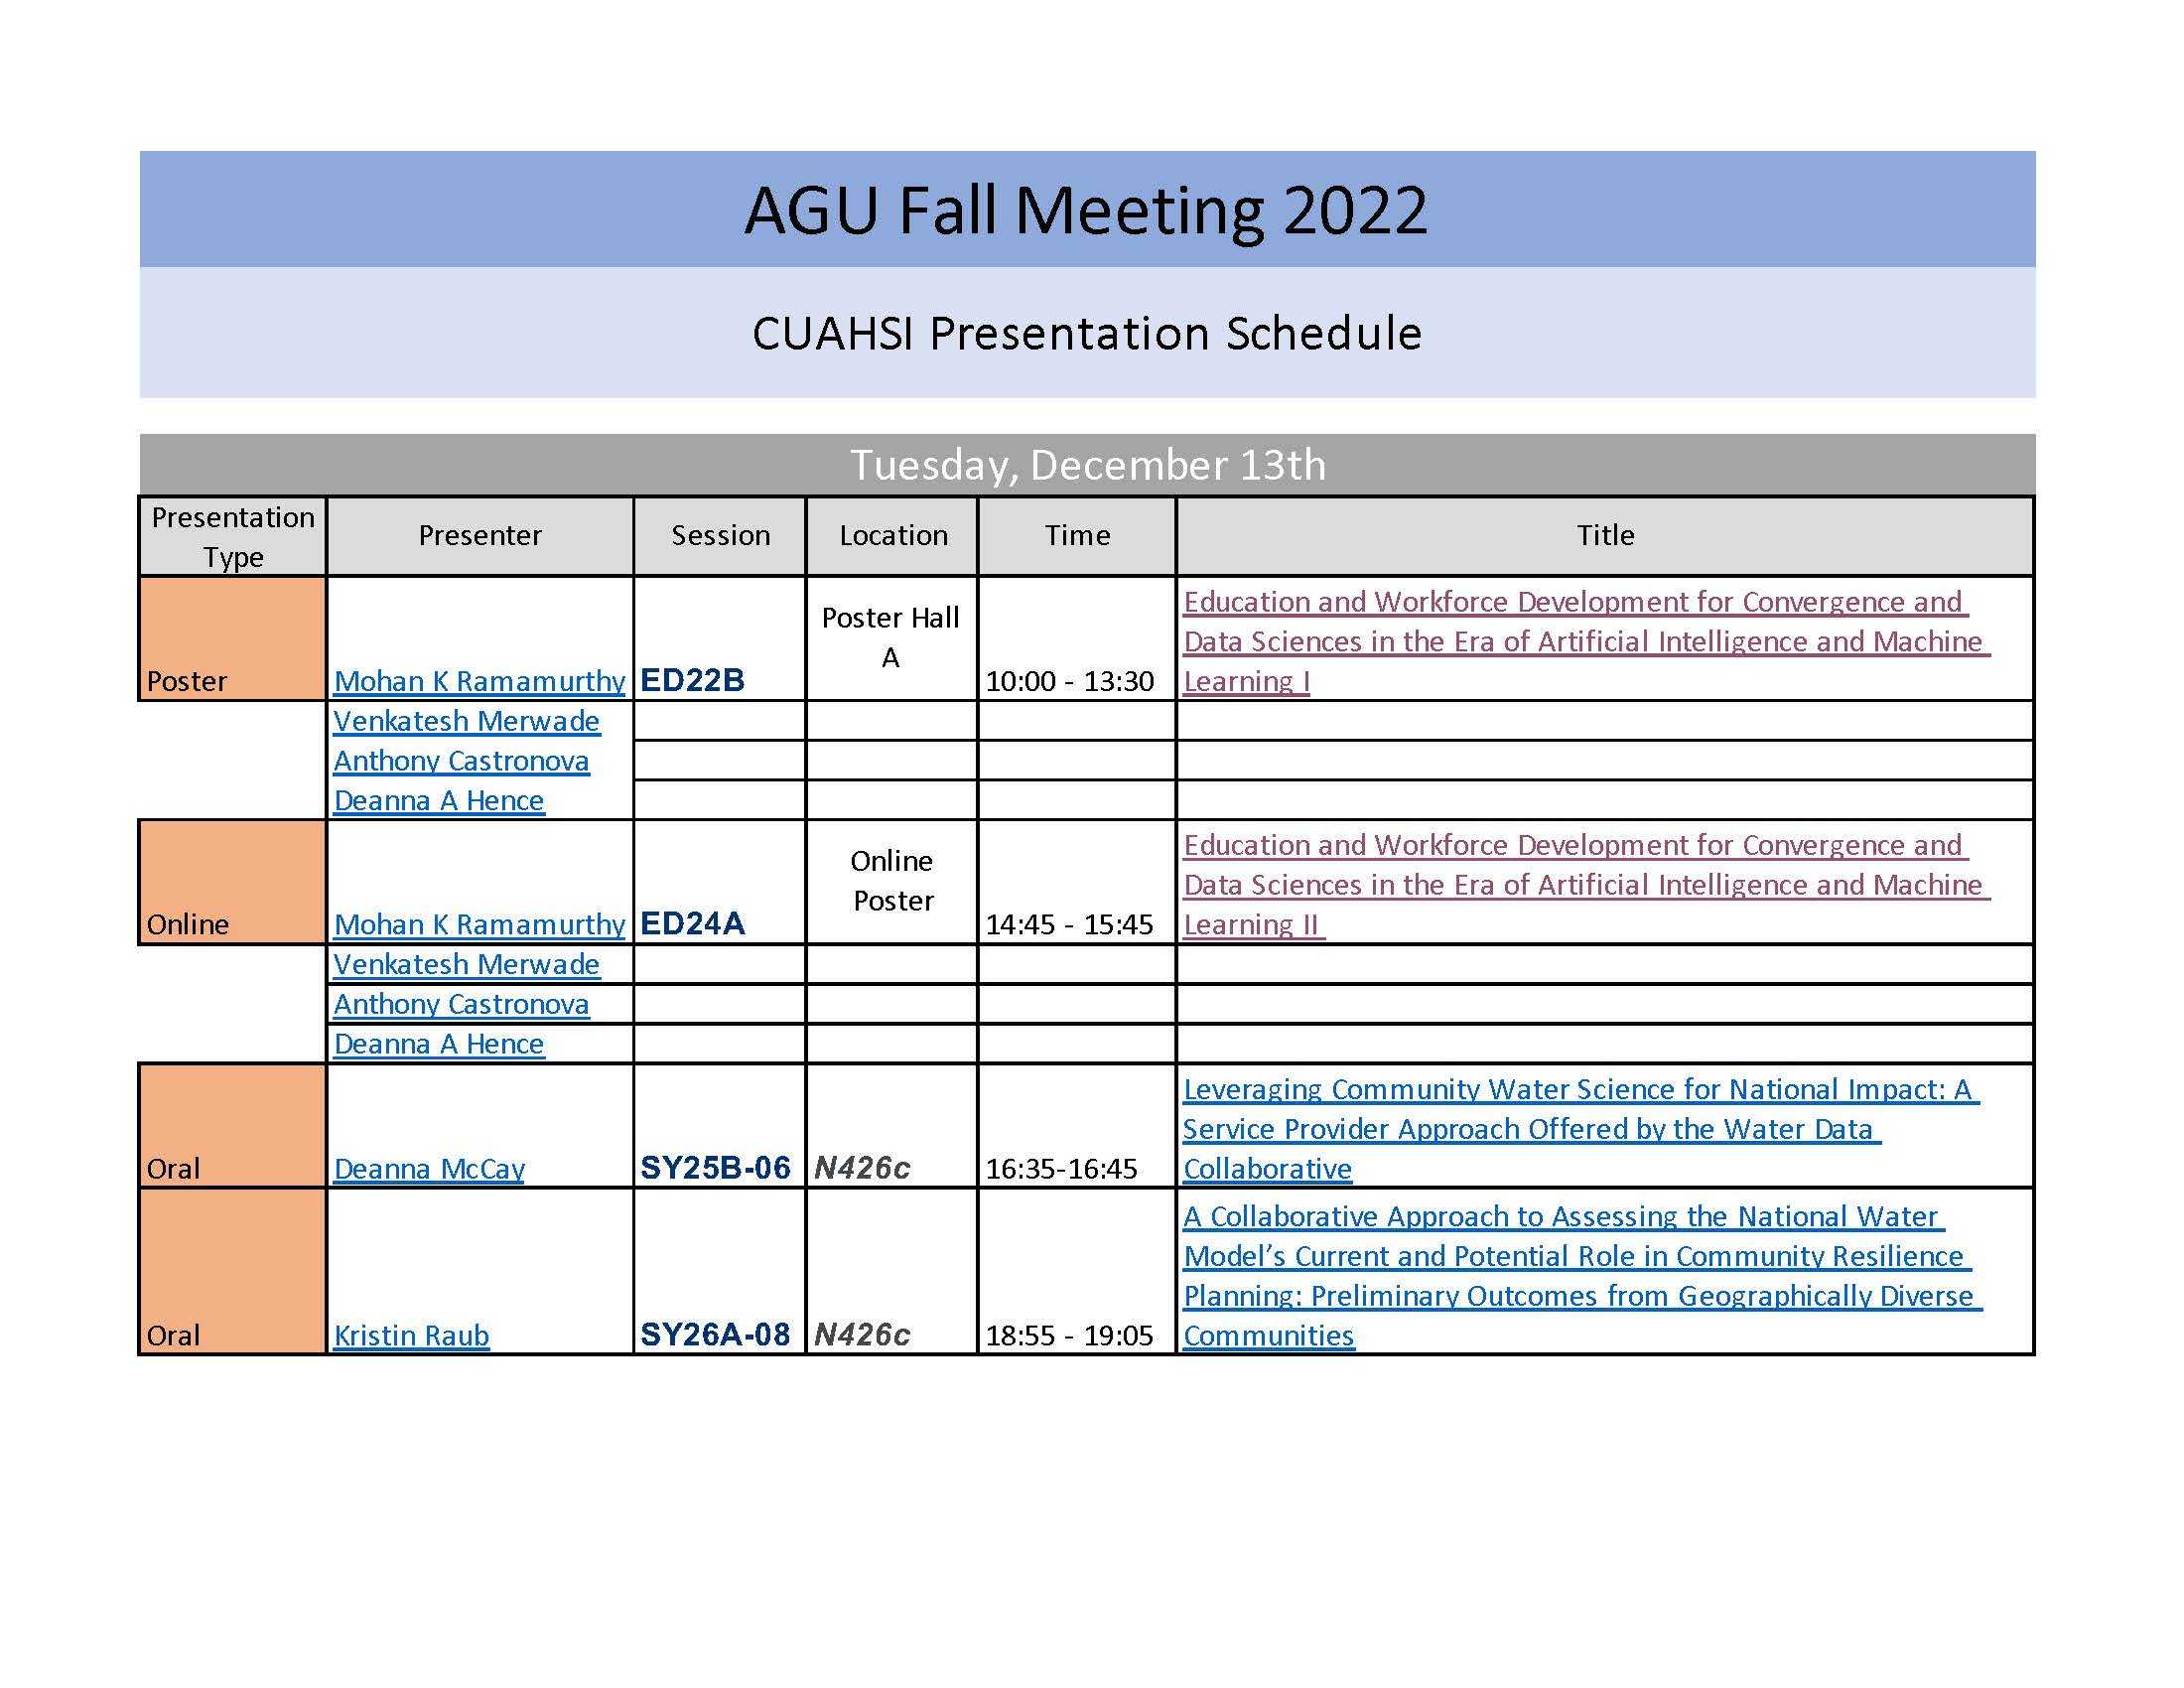 AGU 2022 Schedule